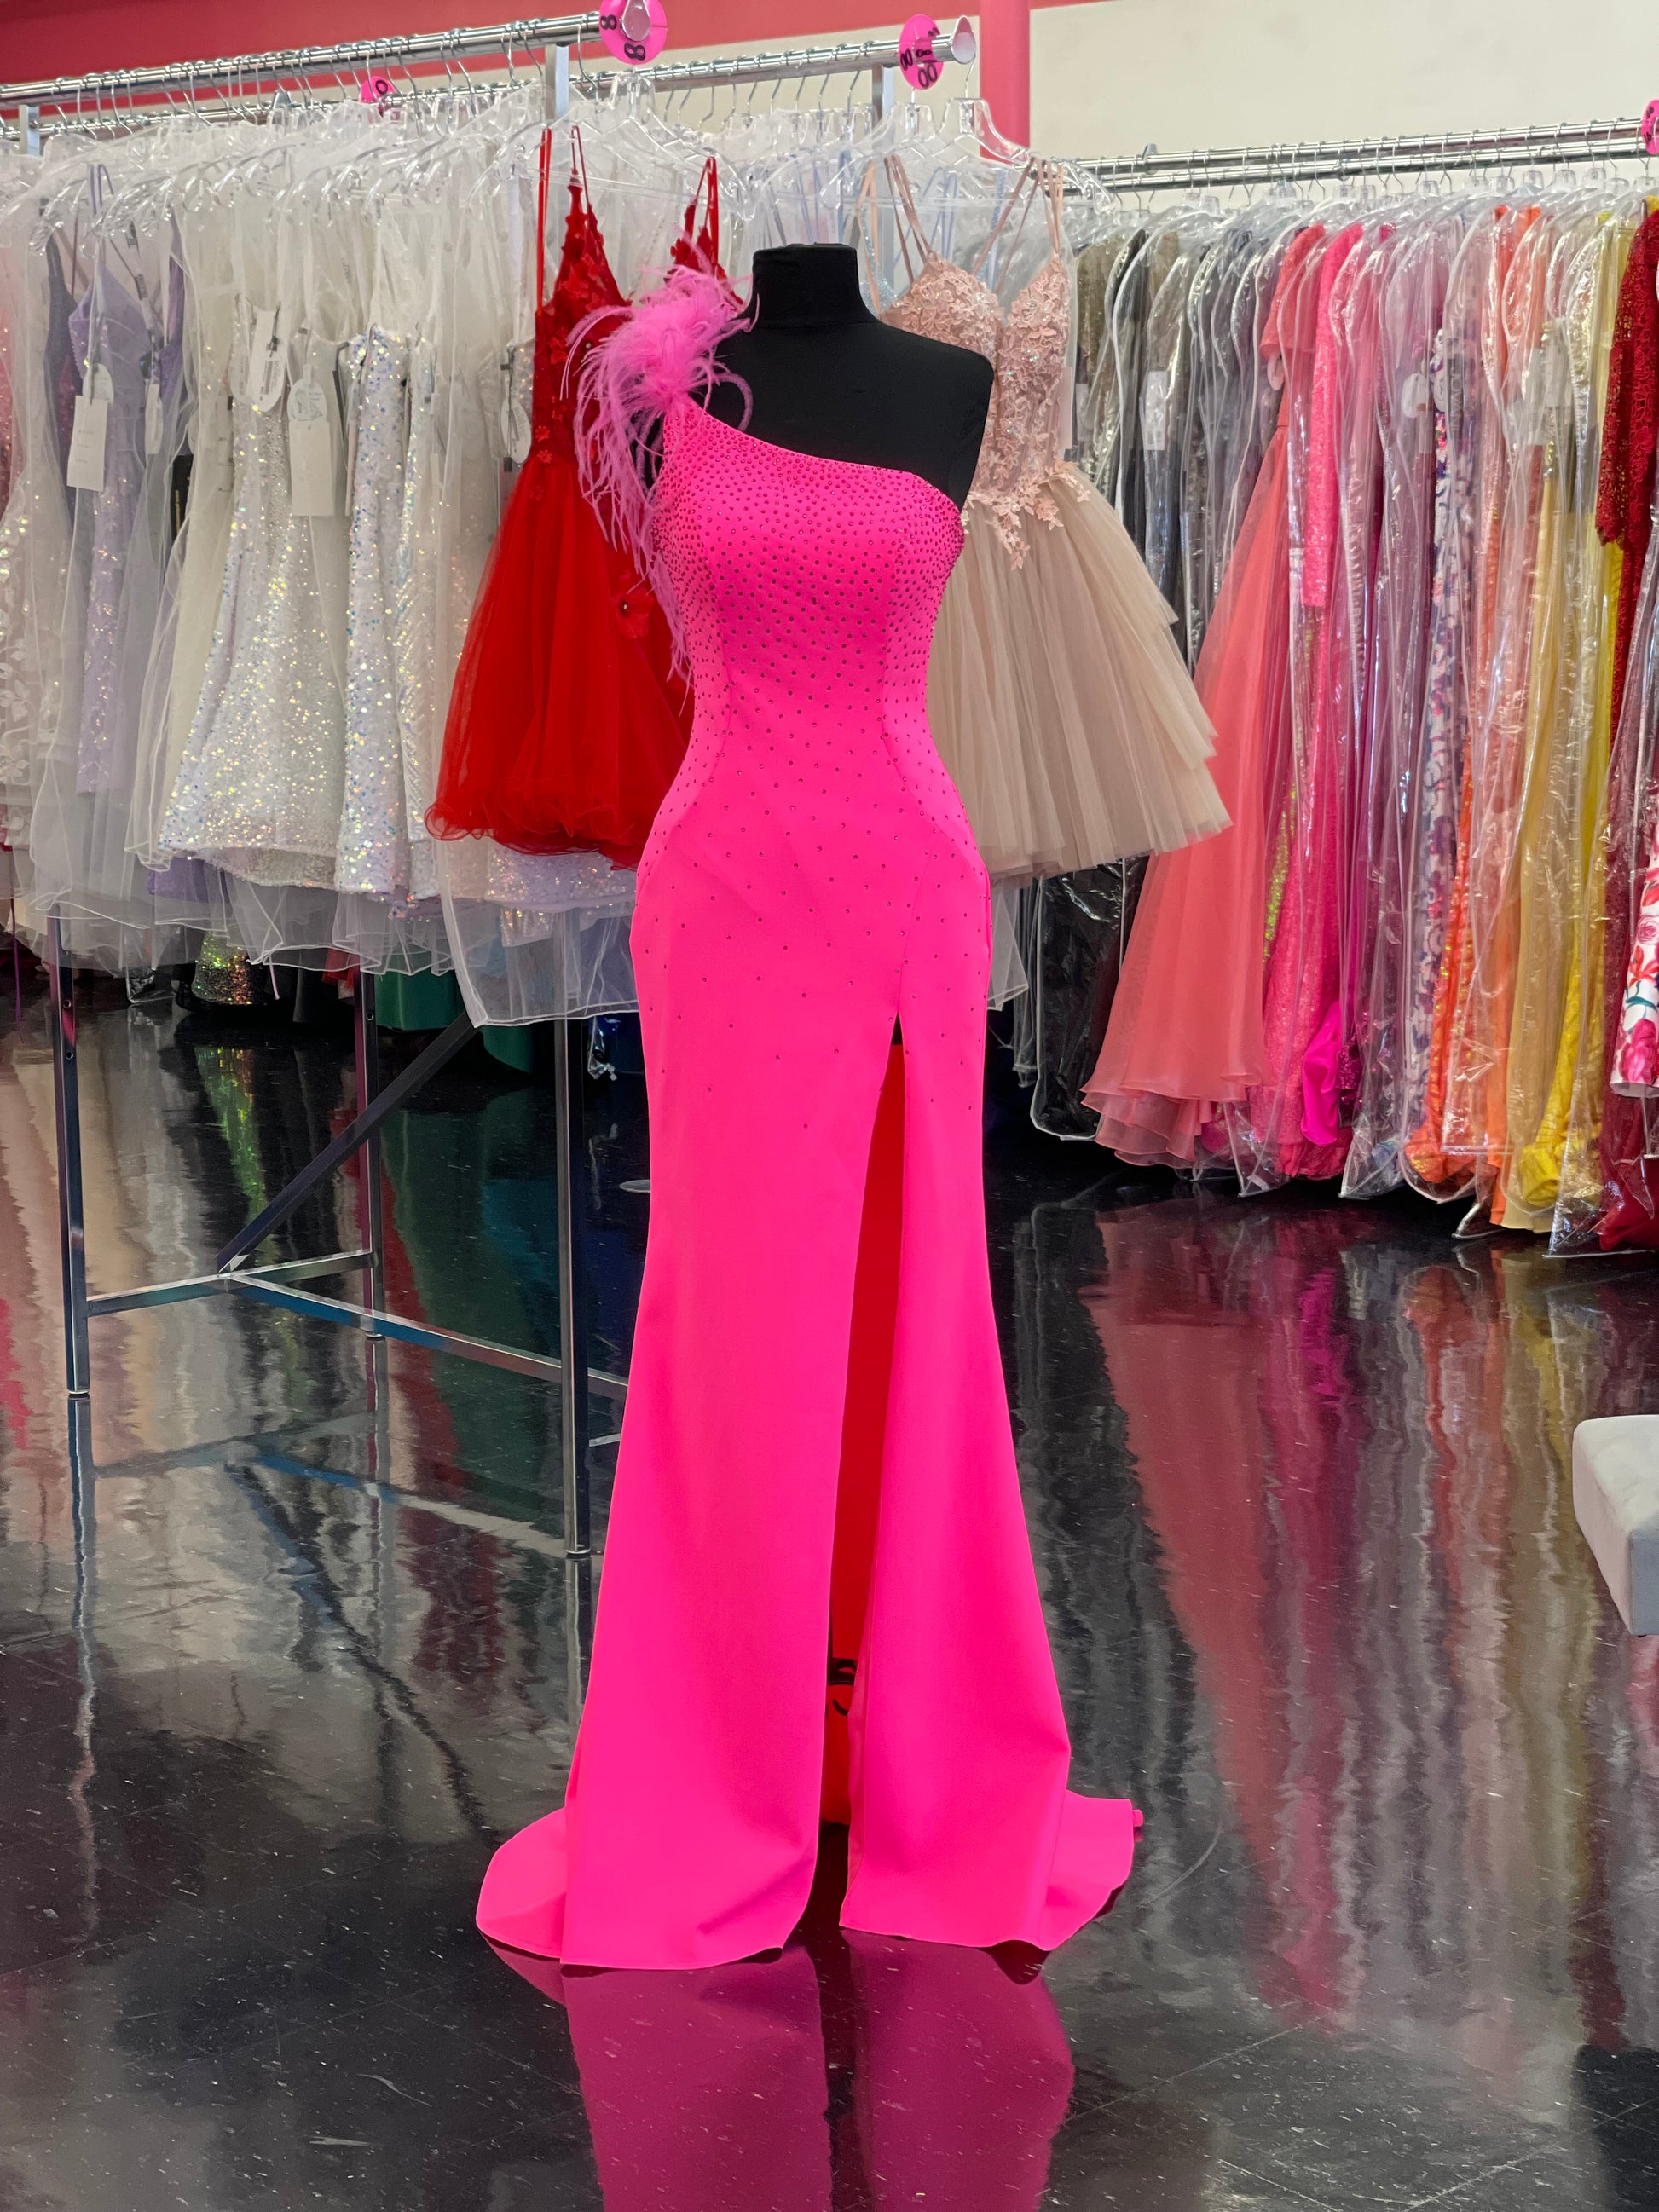 Ashley Lauren 11290 Size 2 Hot Pink One Shoulder Prom Dress